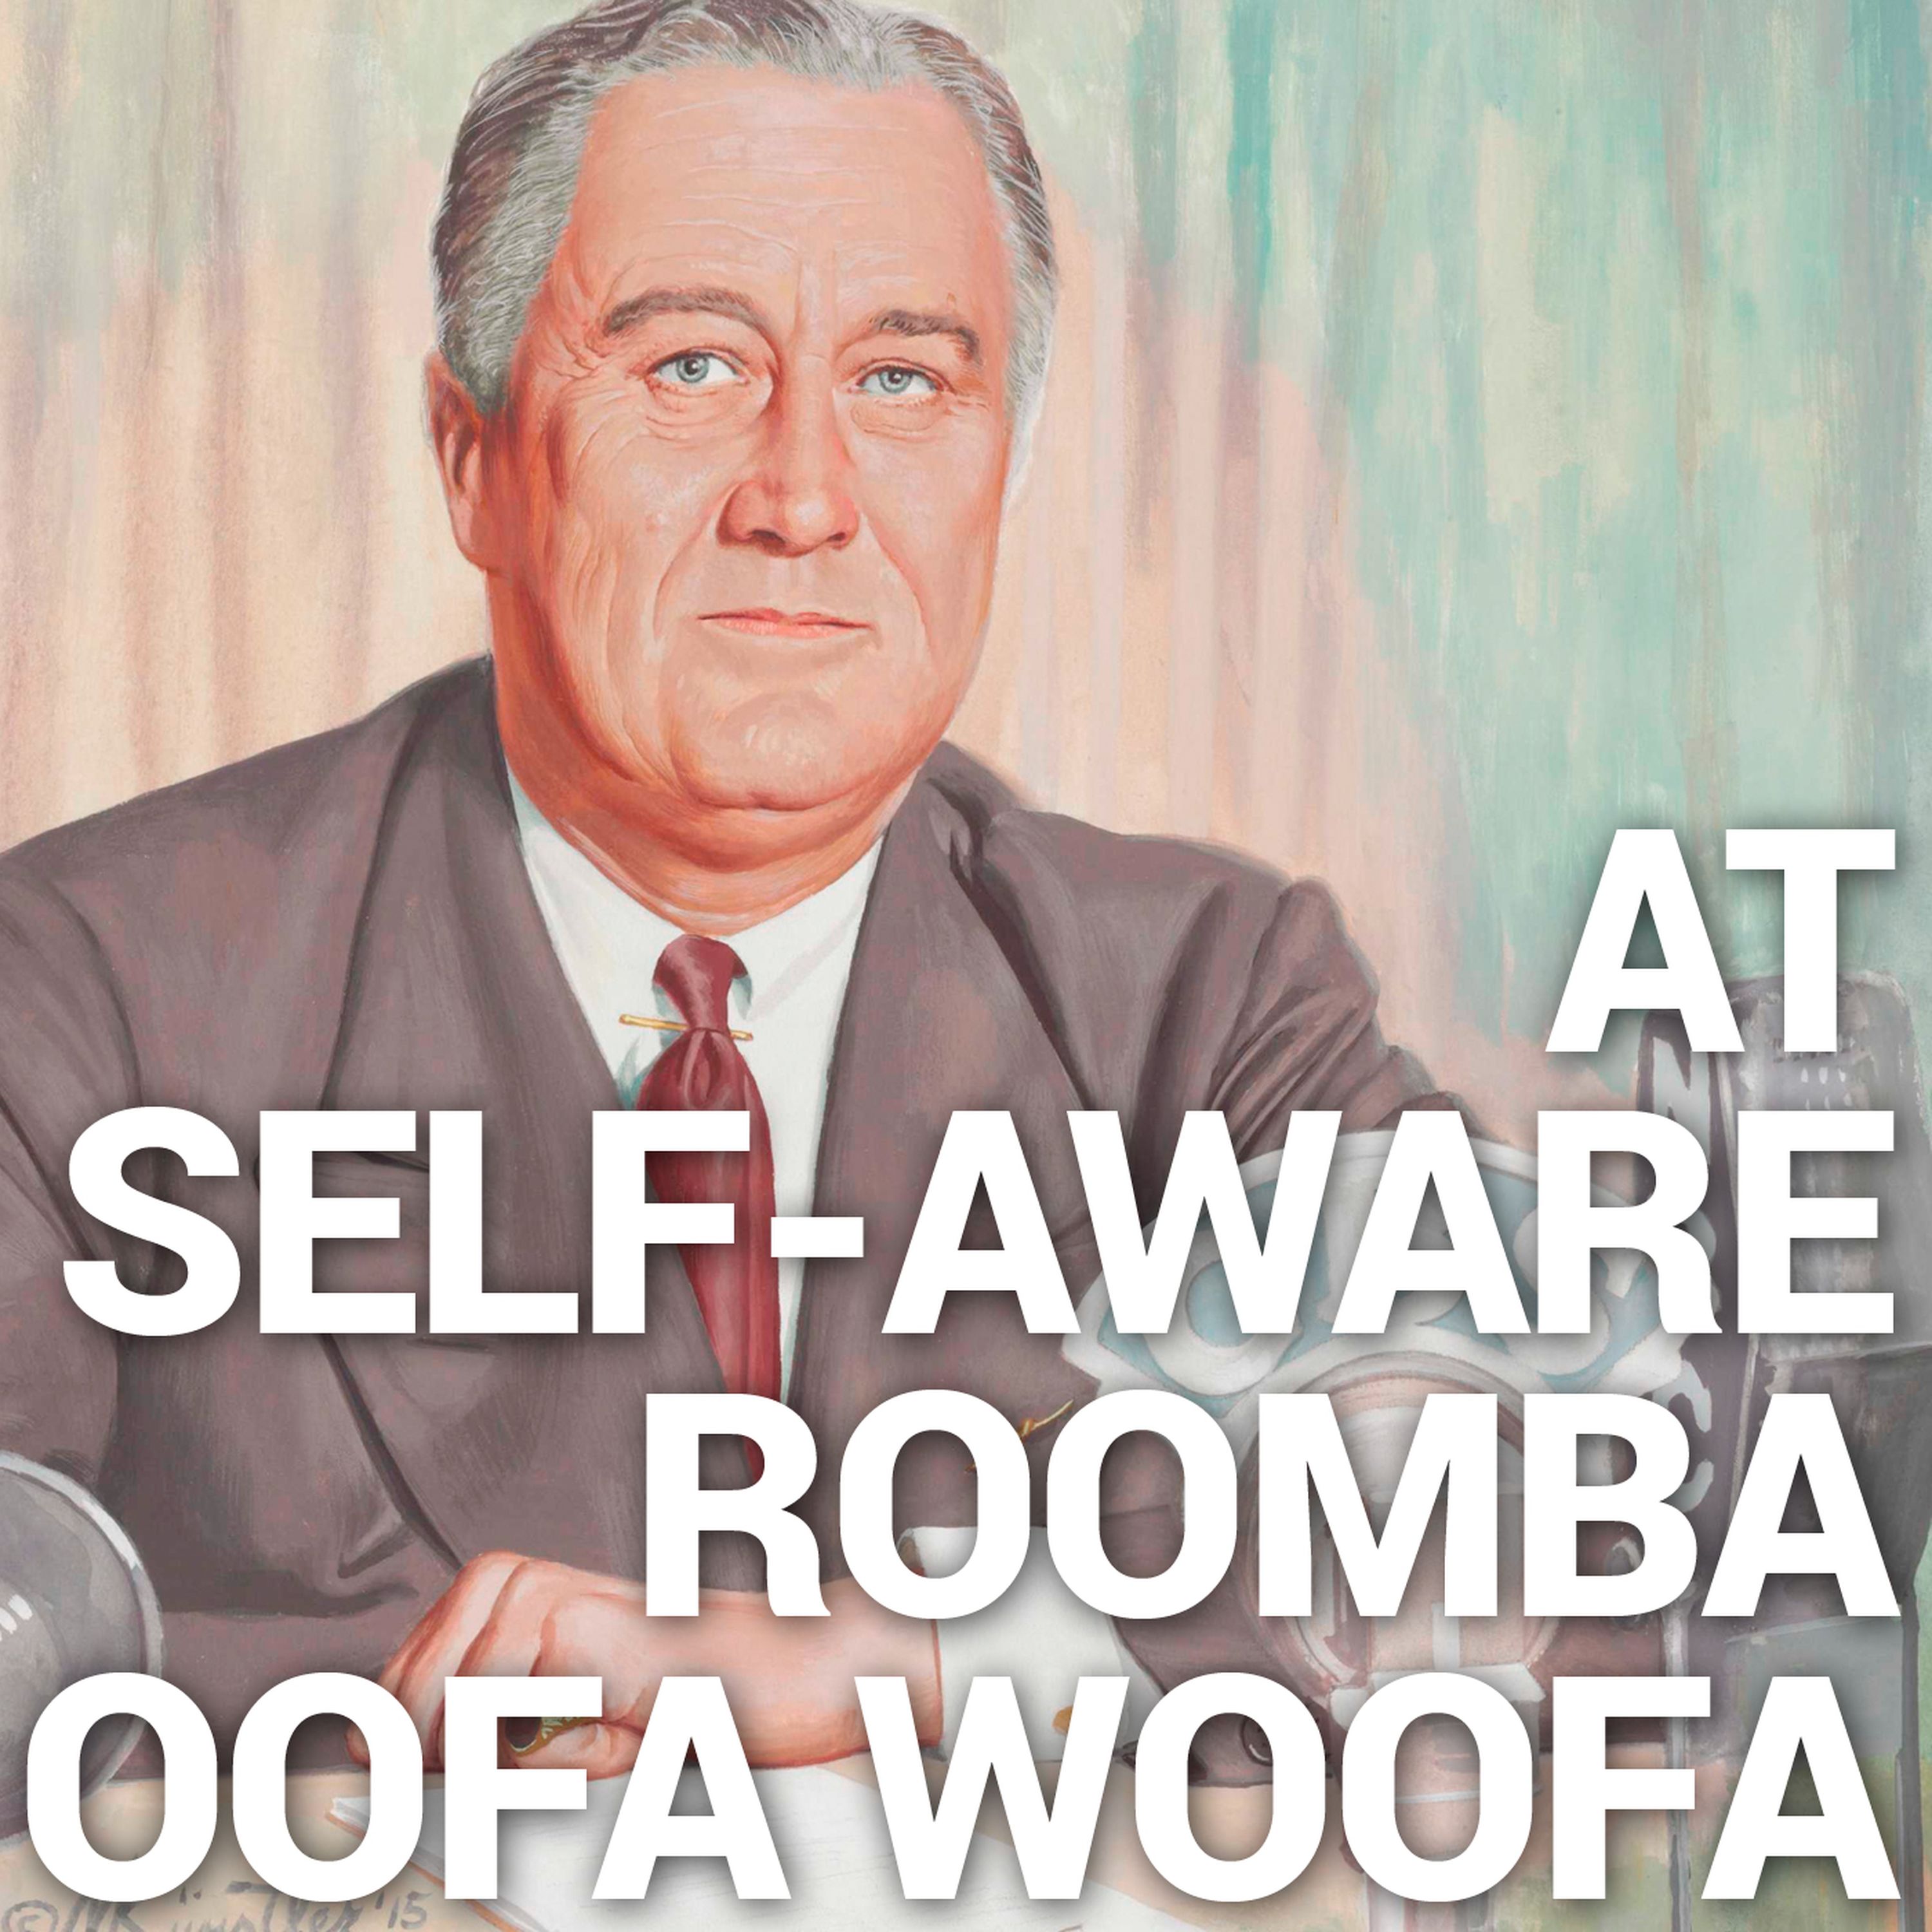 At Self-Aware Roomba Oofa Woofa